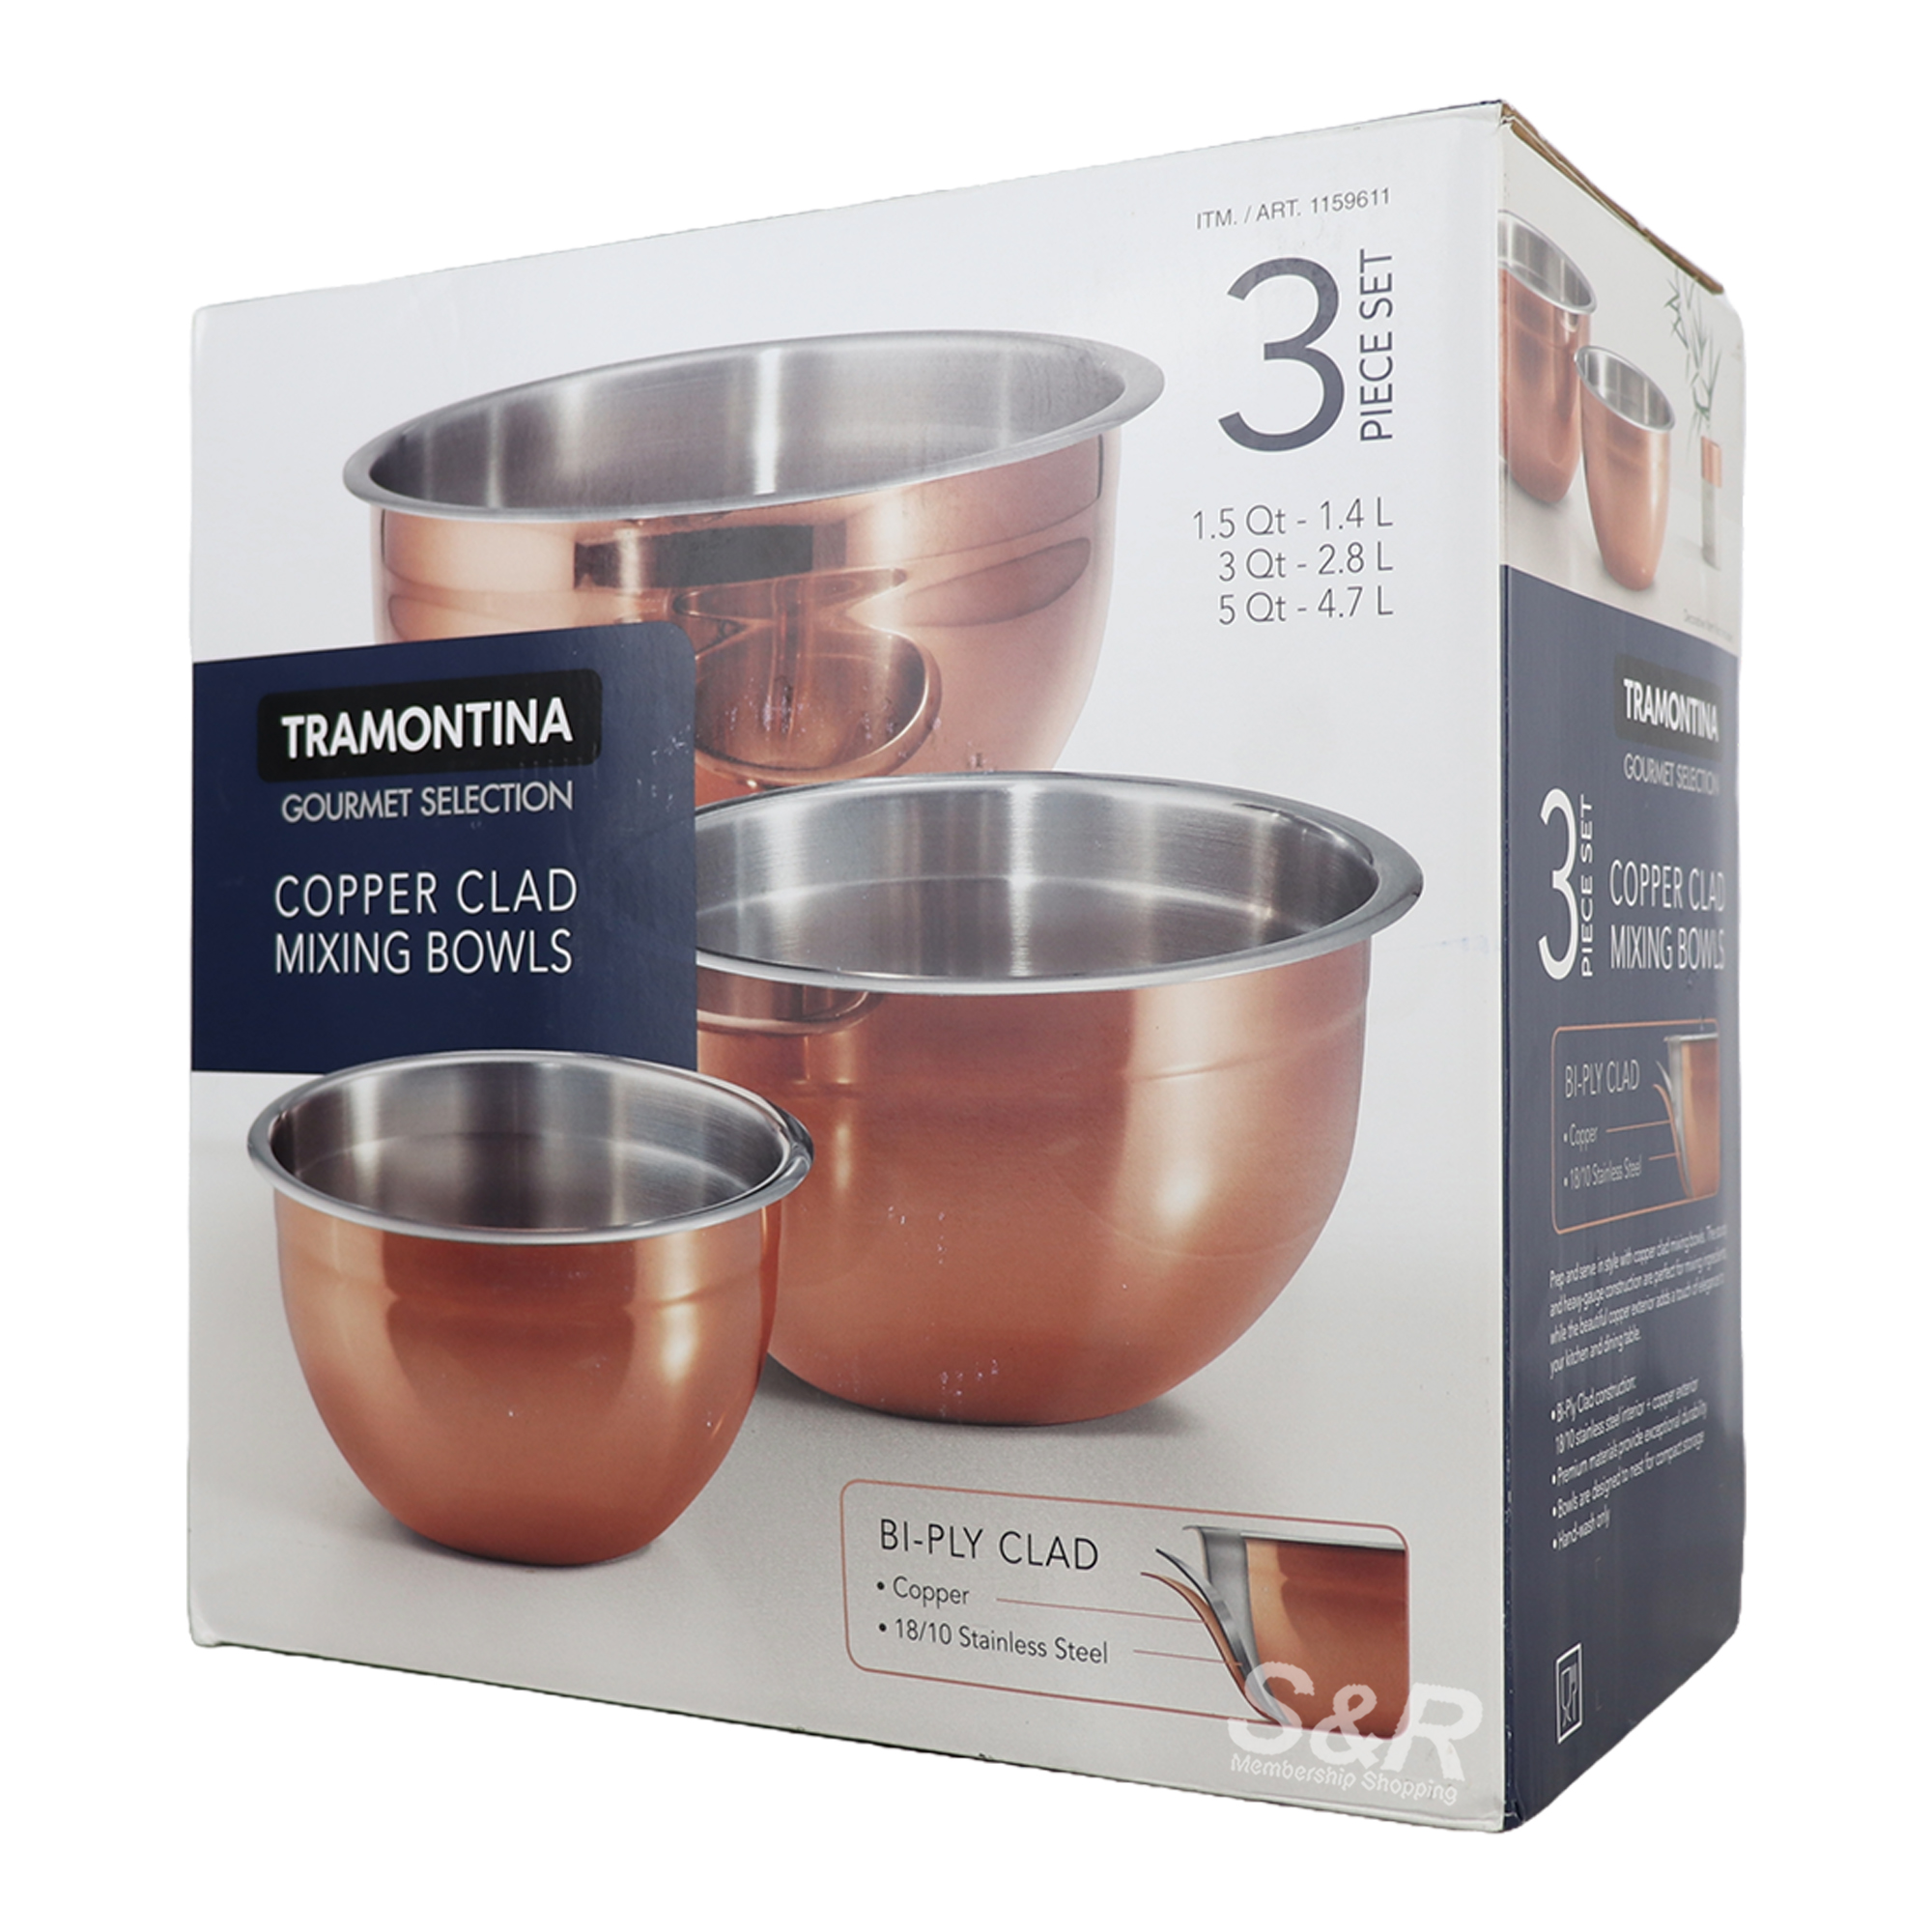 Tramontina Copper Clad Mixing Bowls 3pcs